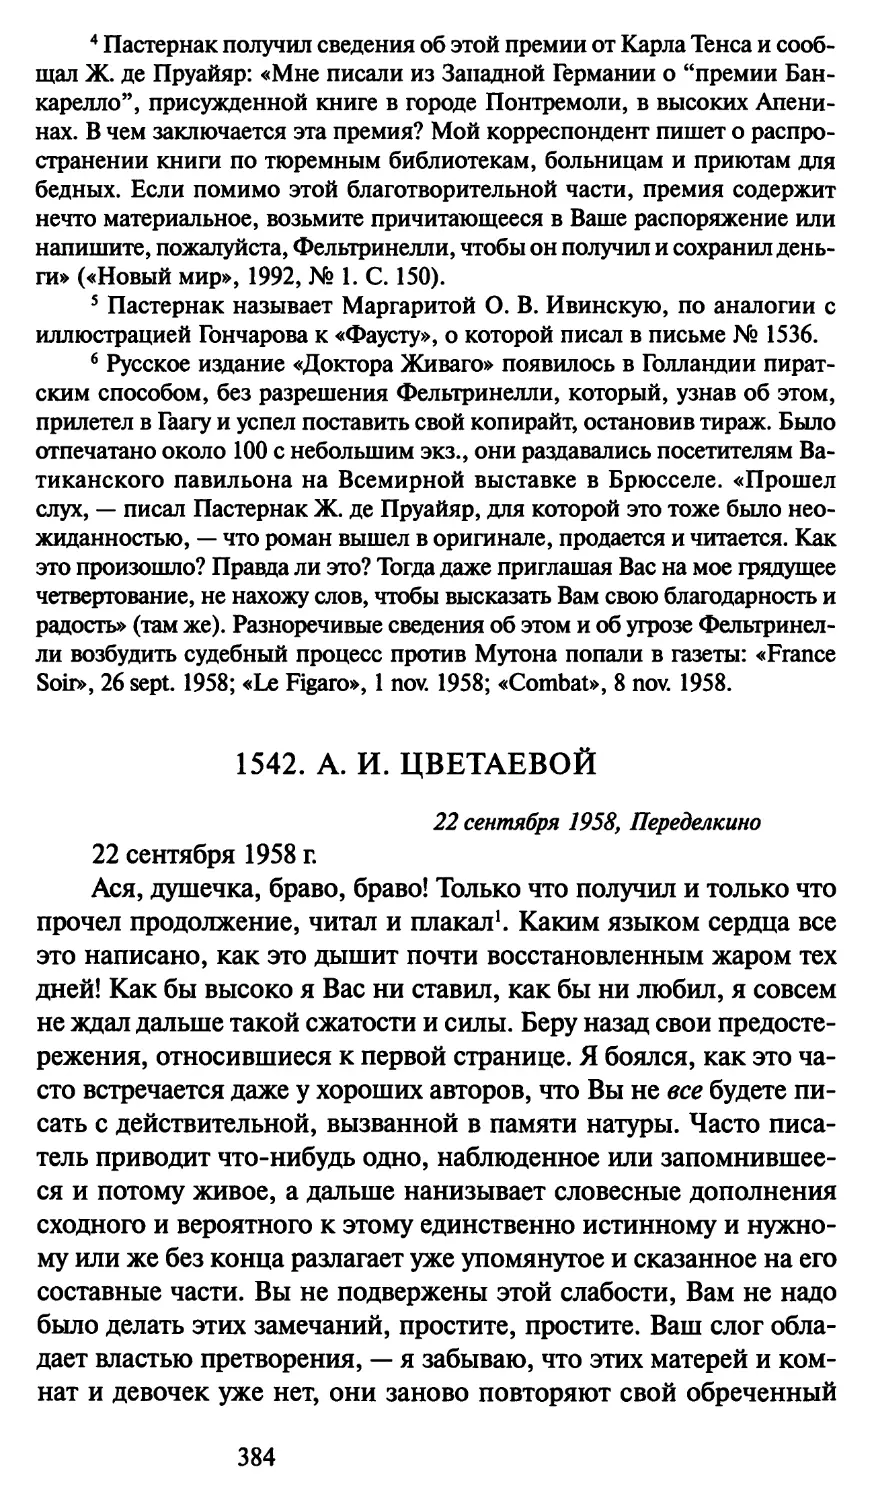 1542. А. И. Цветаевой 22 сентября 1958